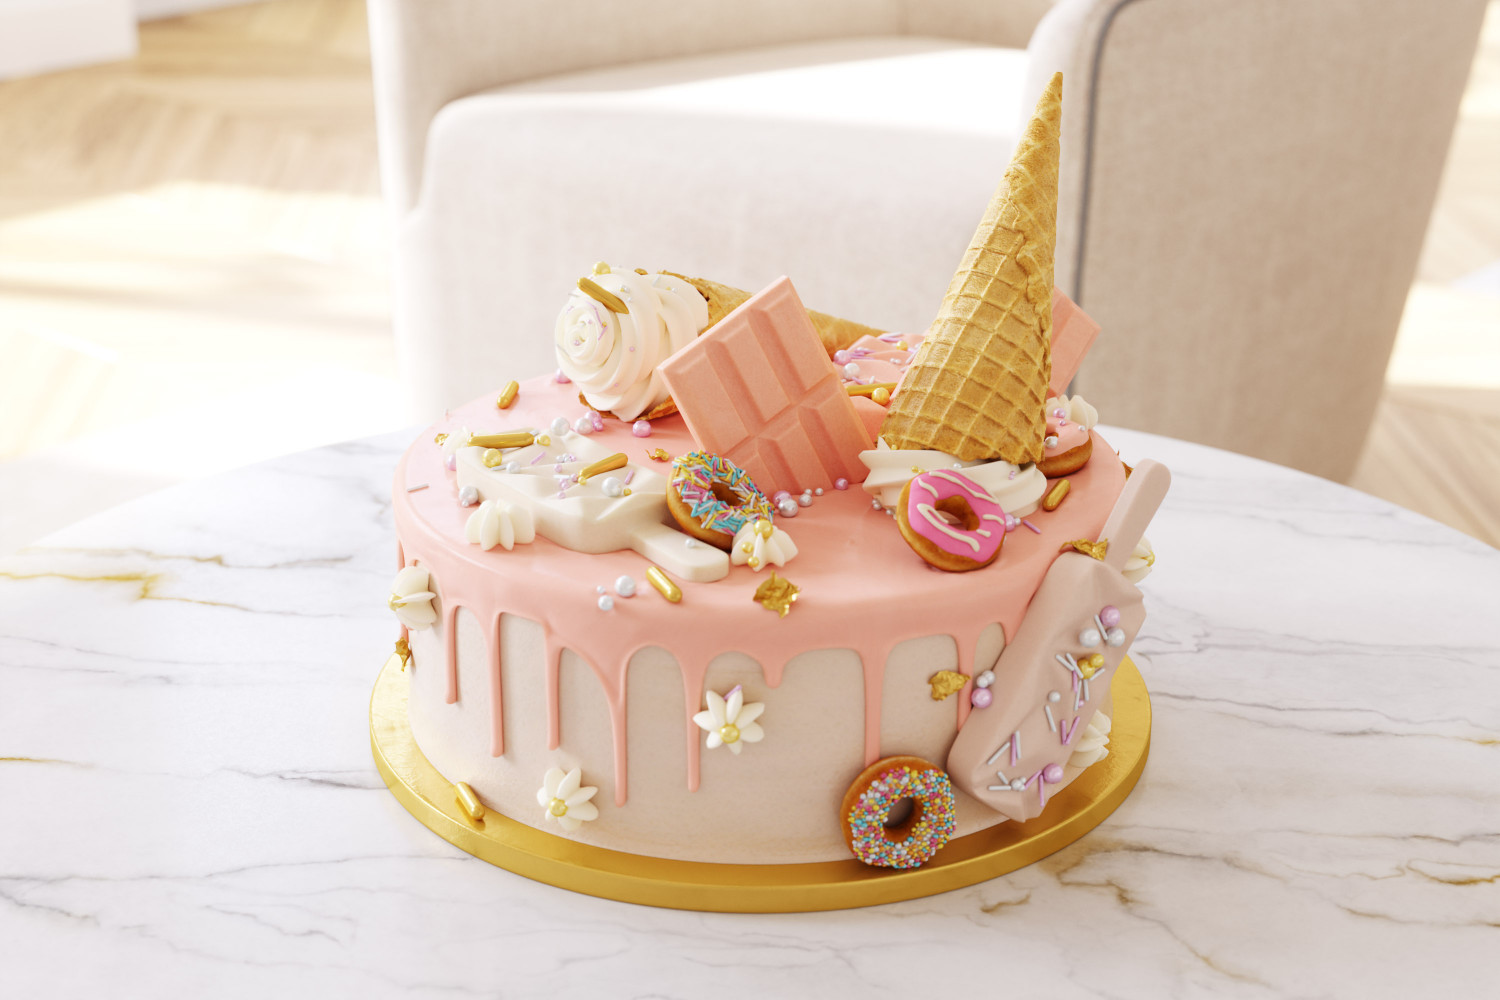 Novelty birthday cake designs | Birthday cakes Portsmouth, Hampshire